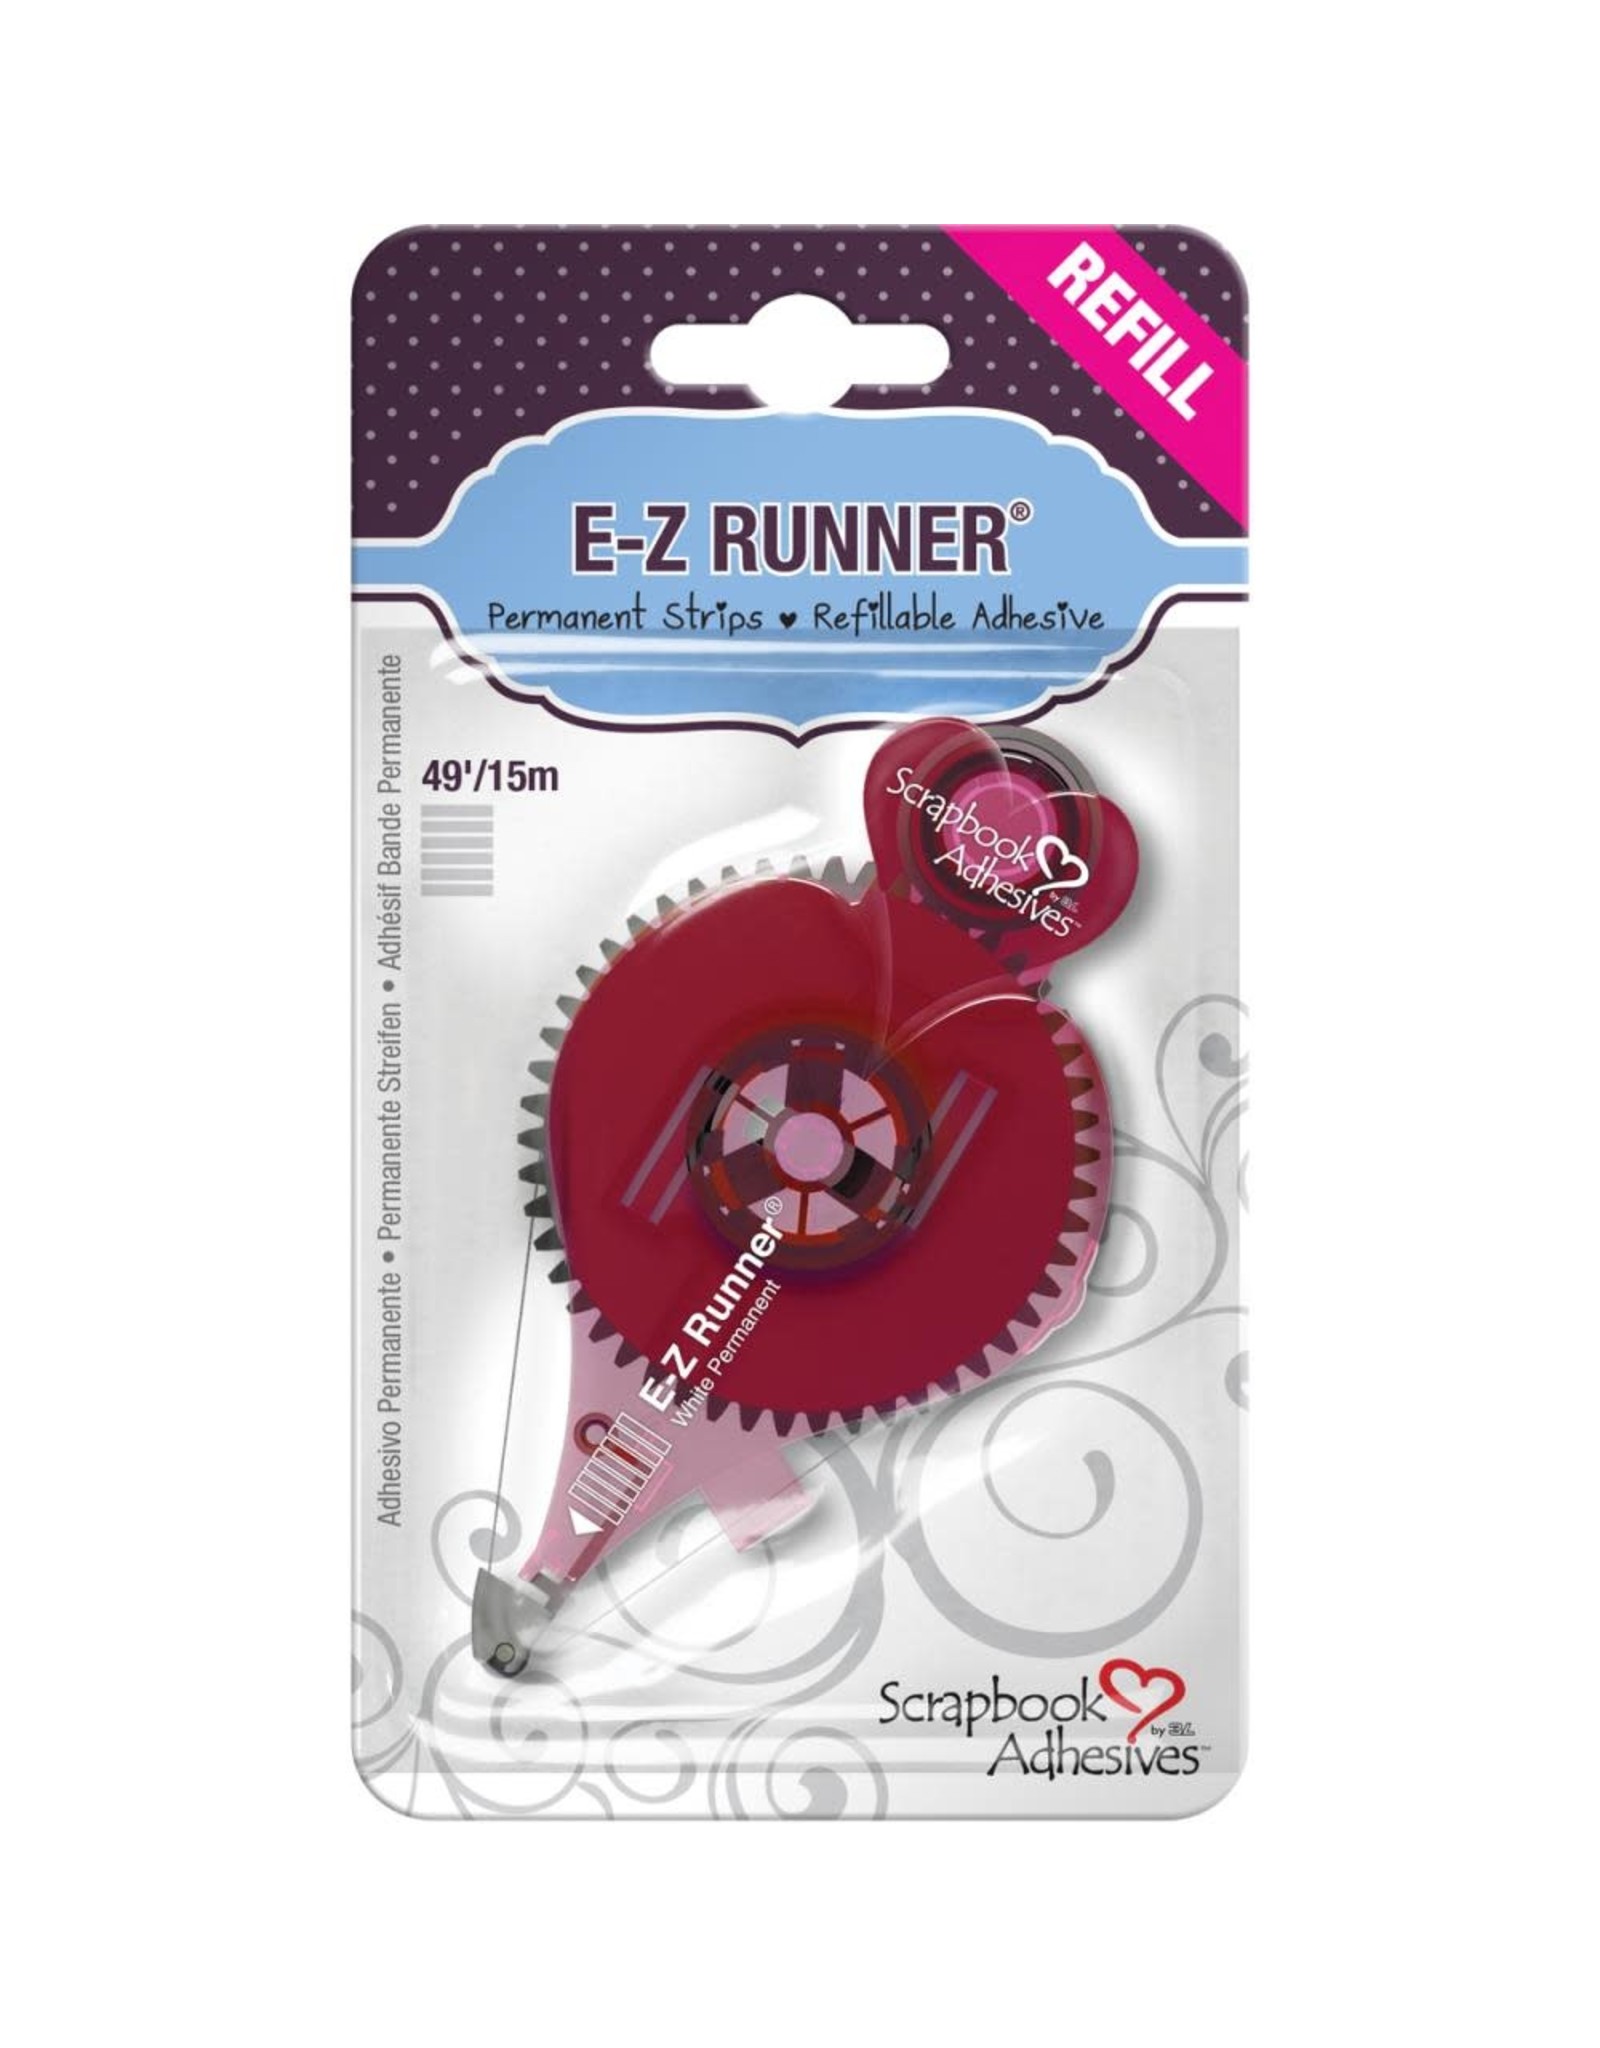 3L SCRAPBOOK ADHESIVES E-Z-RUNNER 49' STRIPS REFILL FOR 01200 RUNNER